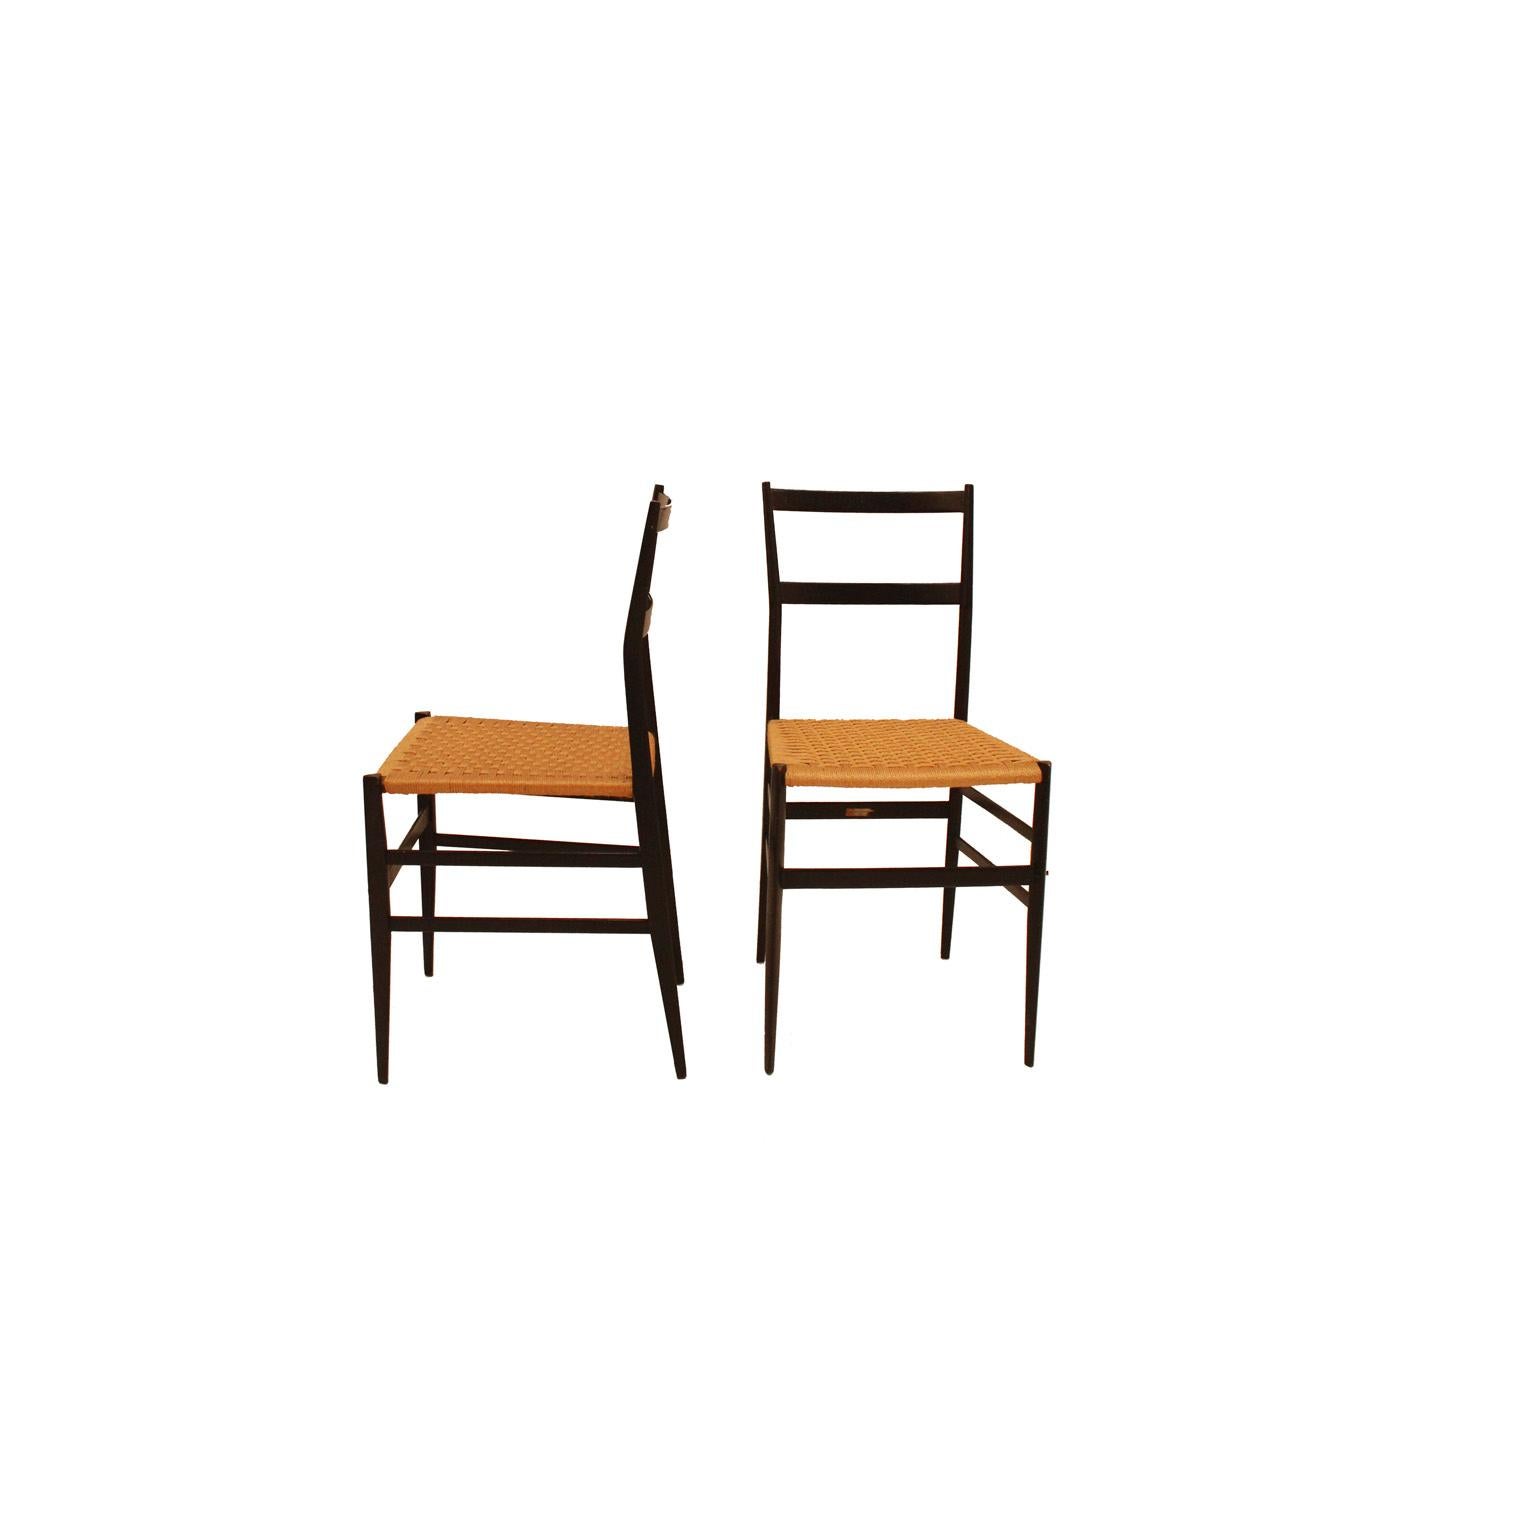 Satz von acht Stühlen mod. Superleggera entworfen von Gio Ponti für Figli Di Amadeo Cassina. Hergestellt aus massivem Eschenholz und Rattan. Italien 1957. Seine Konstruktion Herausforderung ist in der dreieckigen Abschnitt der Beine, nur 18